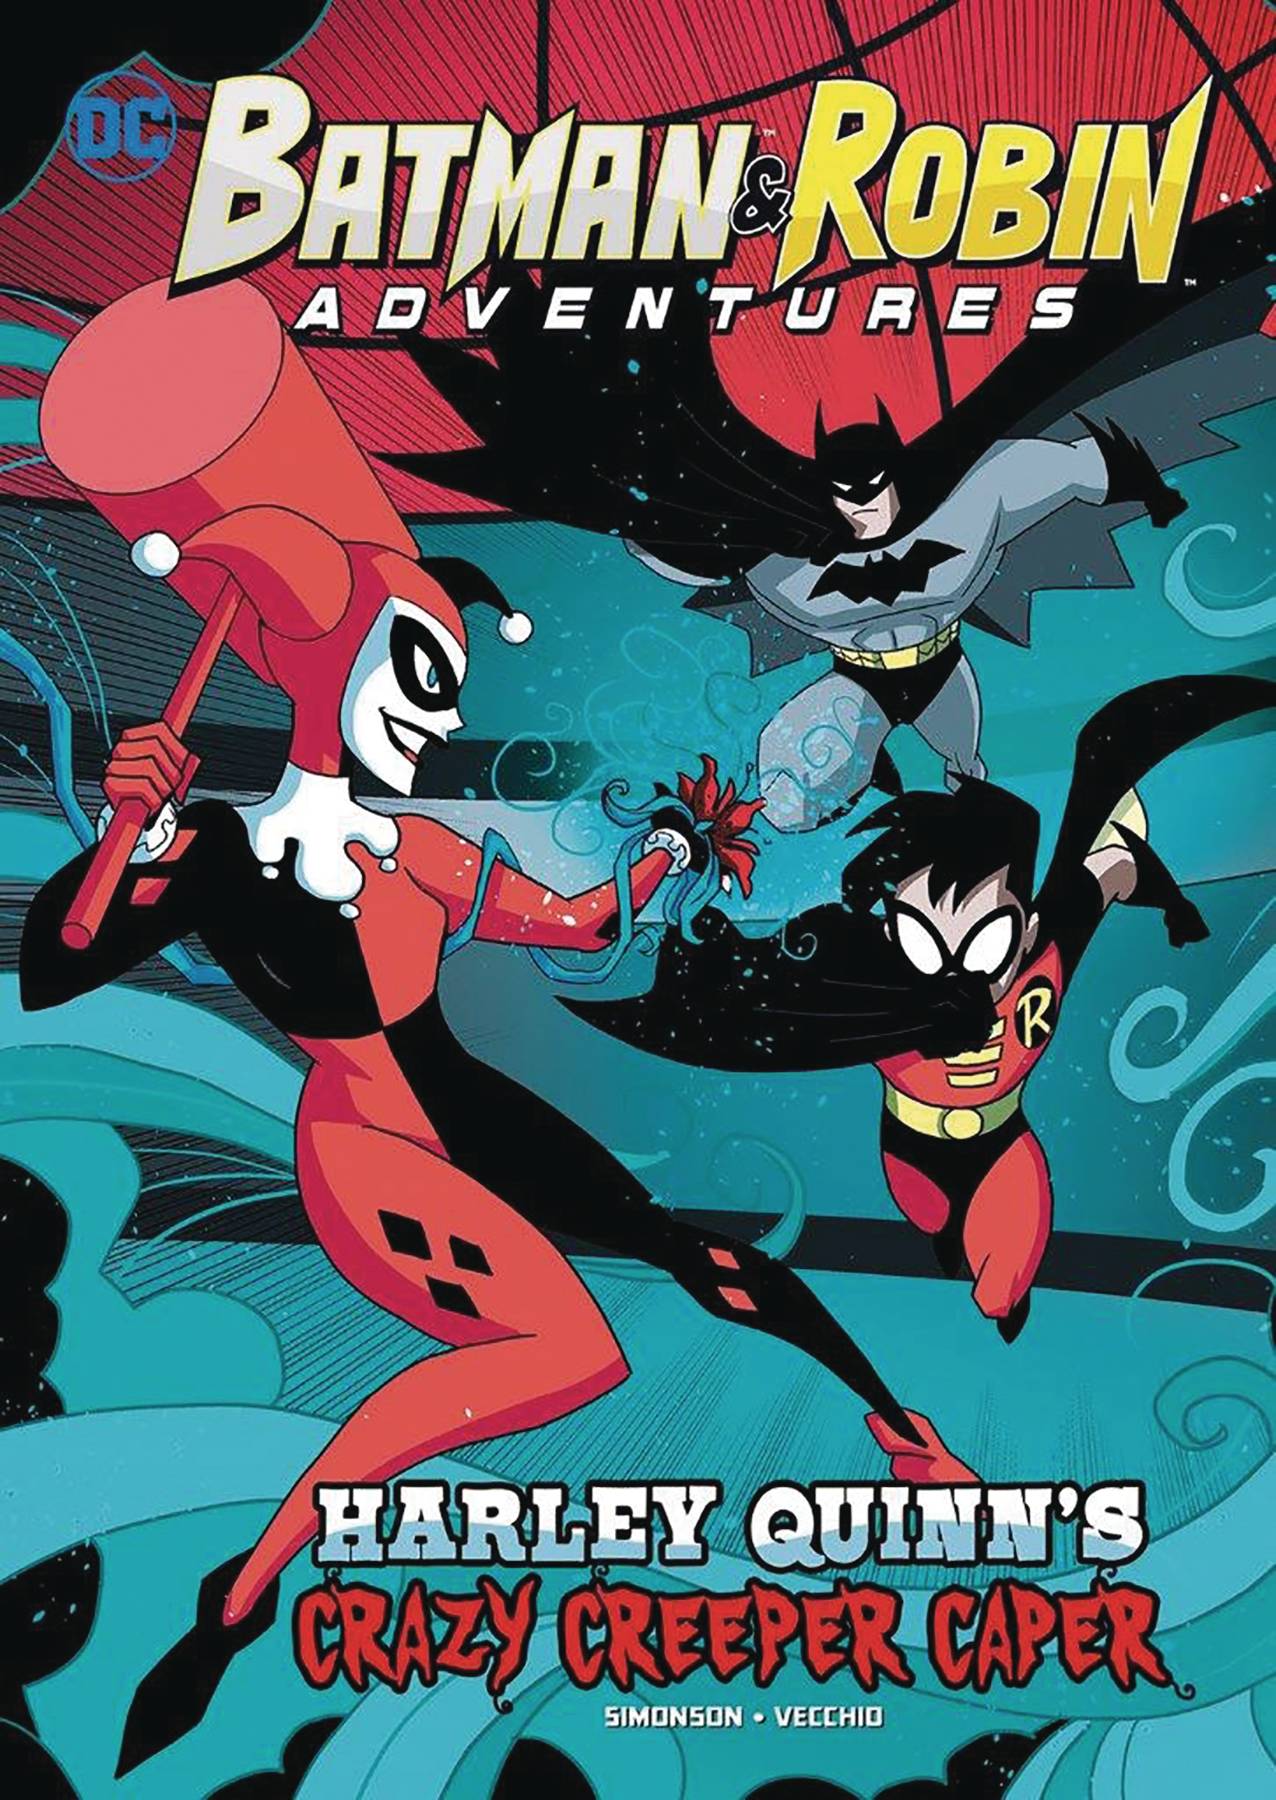 Batman & Robin Adventure Young Reader Graphic Novel #7 Harley Quinns Crazy Creeper Caper